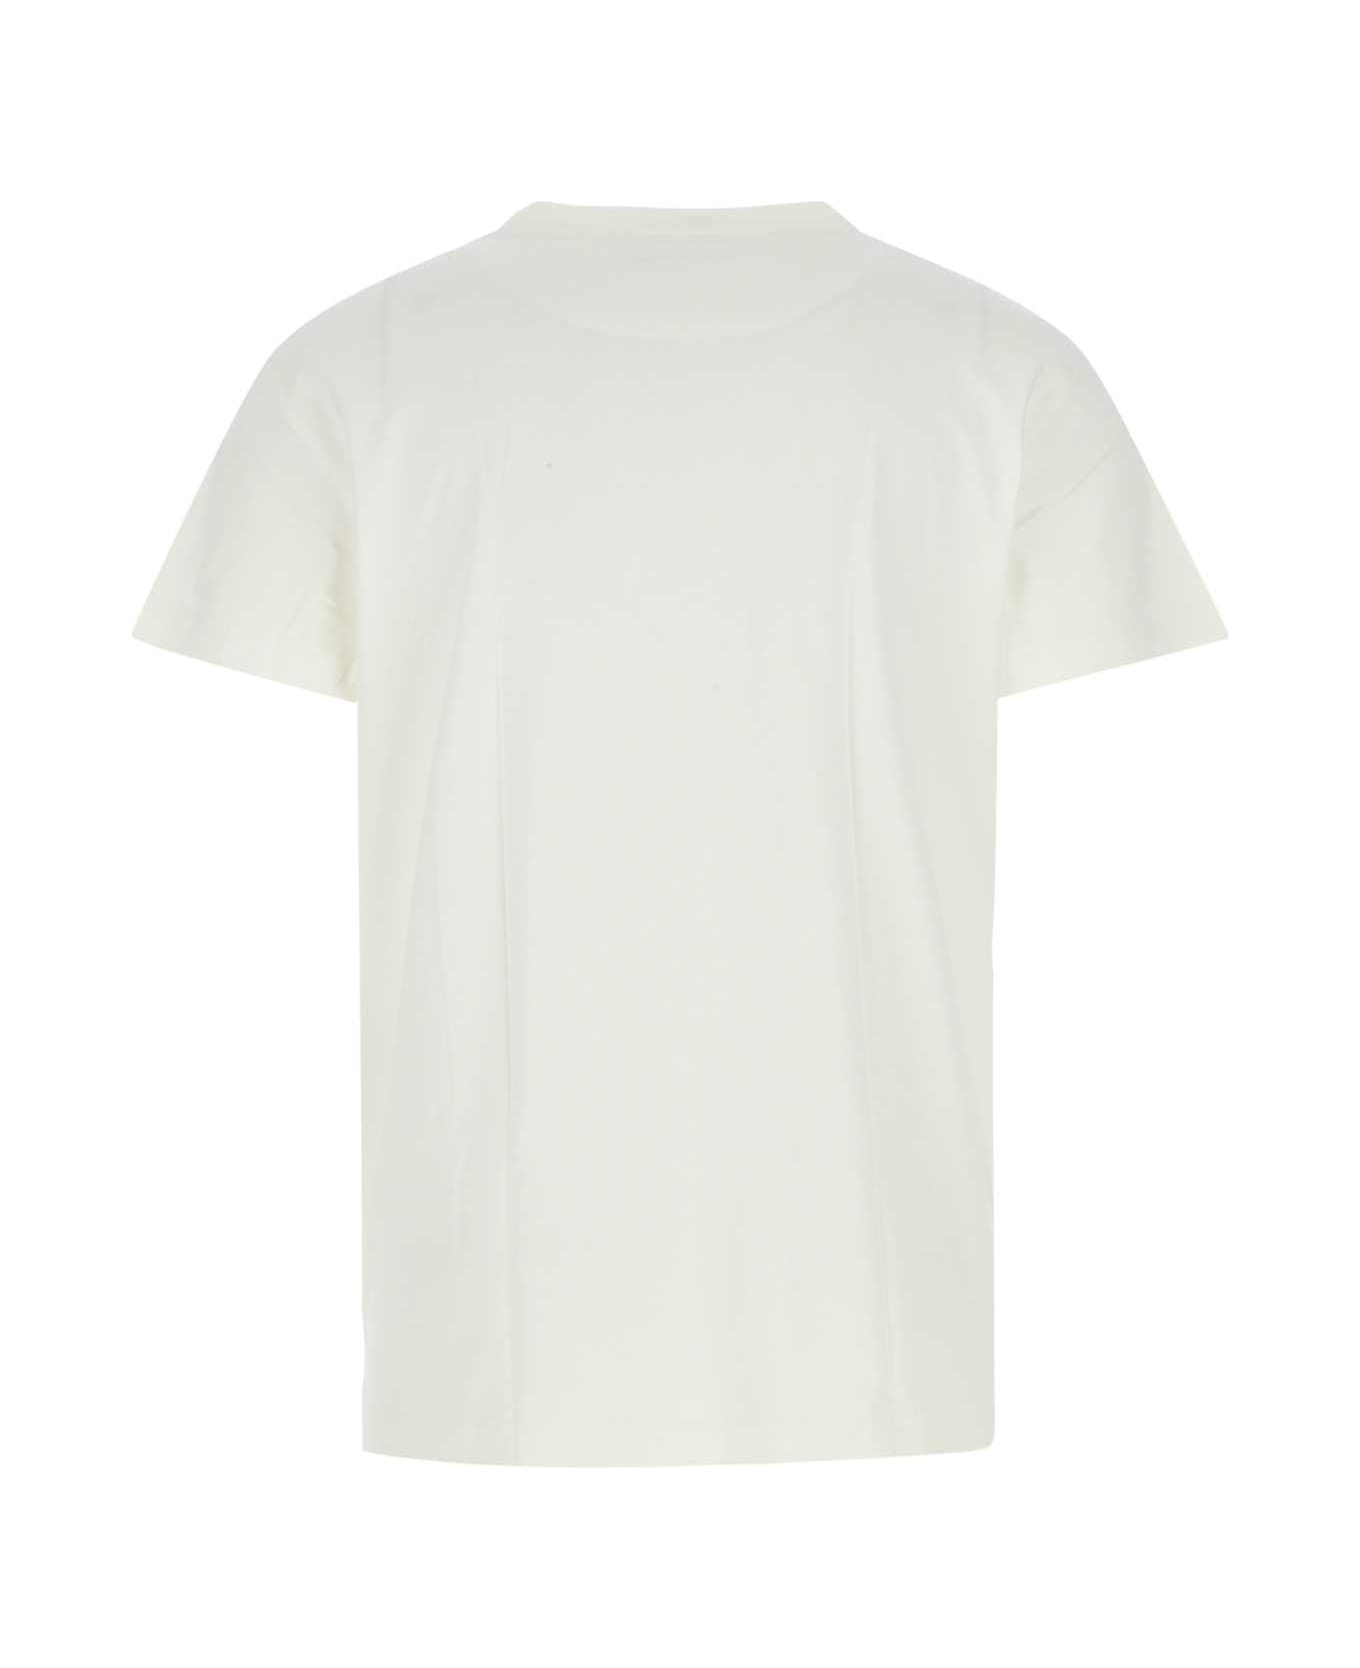 Jil Sander White Cotton T-shirt Set - 100 シャツ